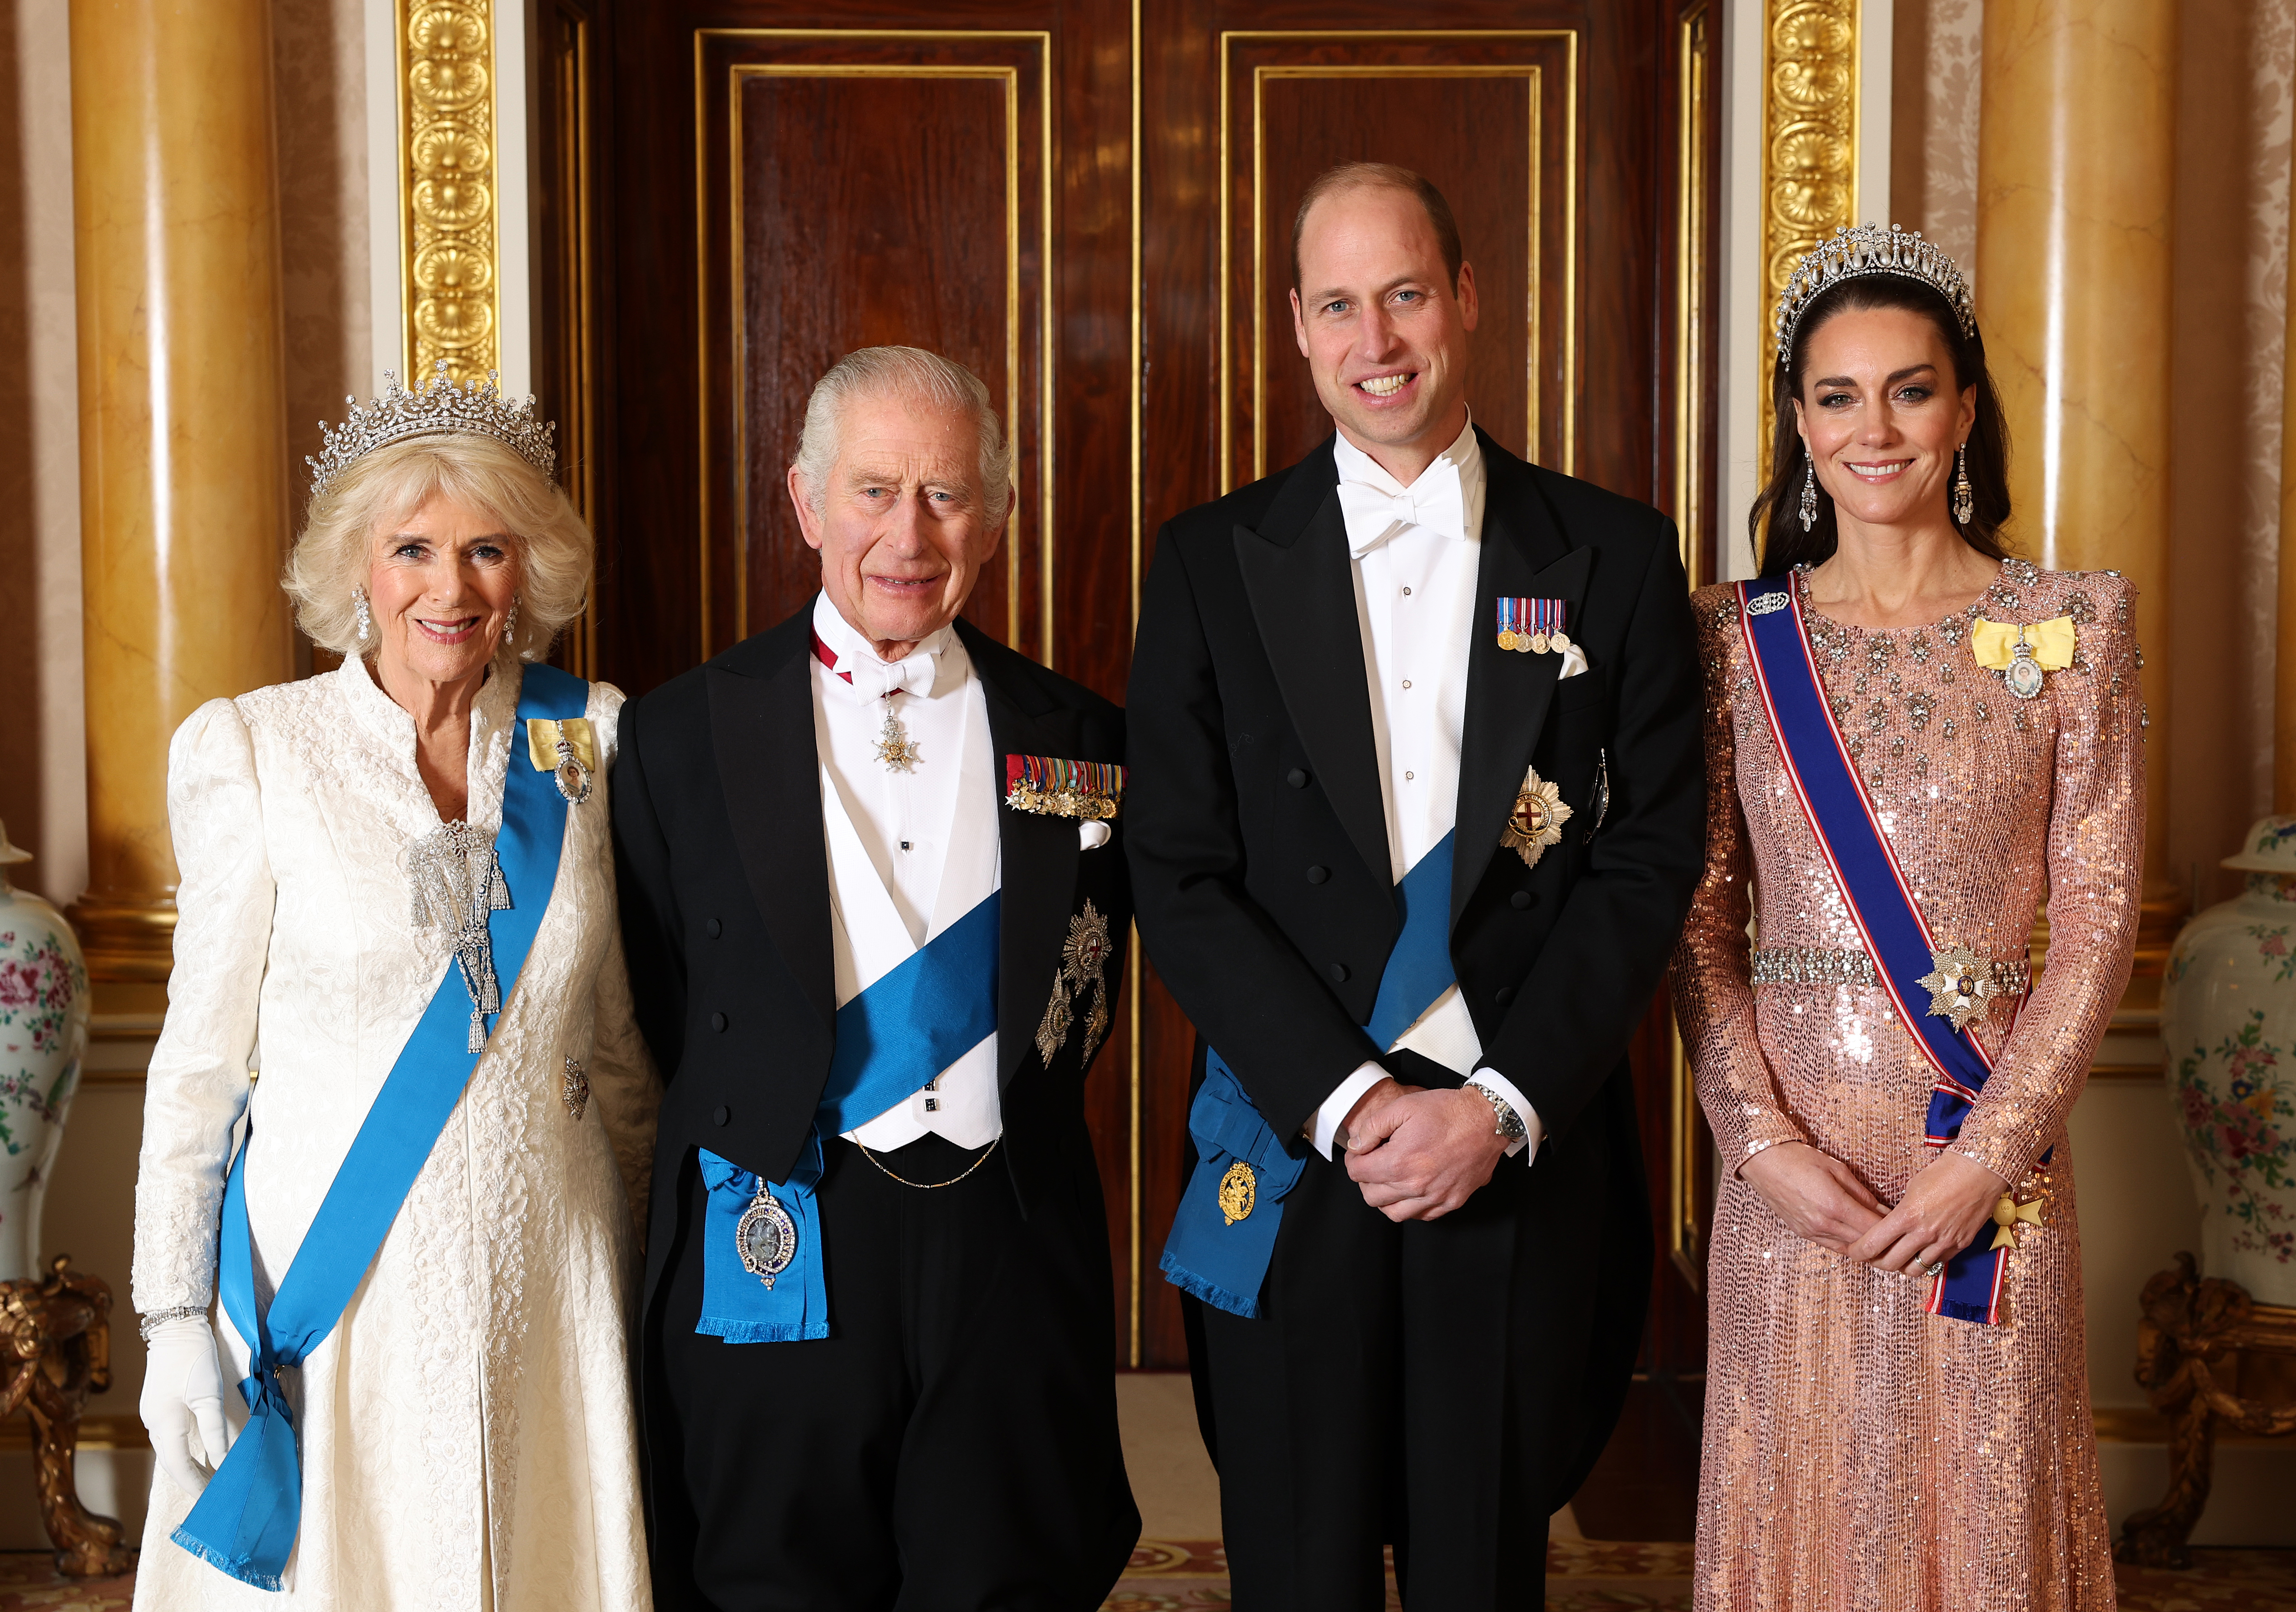 Le roi Charles III, la reine Camilla, le prince William et la princesse Catherine avant la réception diplomatique dans la salle 1844 du palais de Buckingham le 05 décembre 2023 à Londres, Angleterre | Source : Getty Images